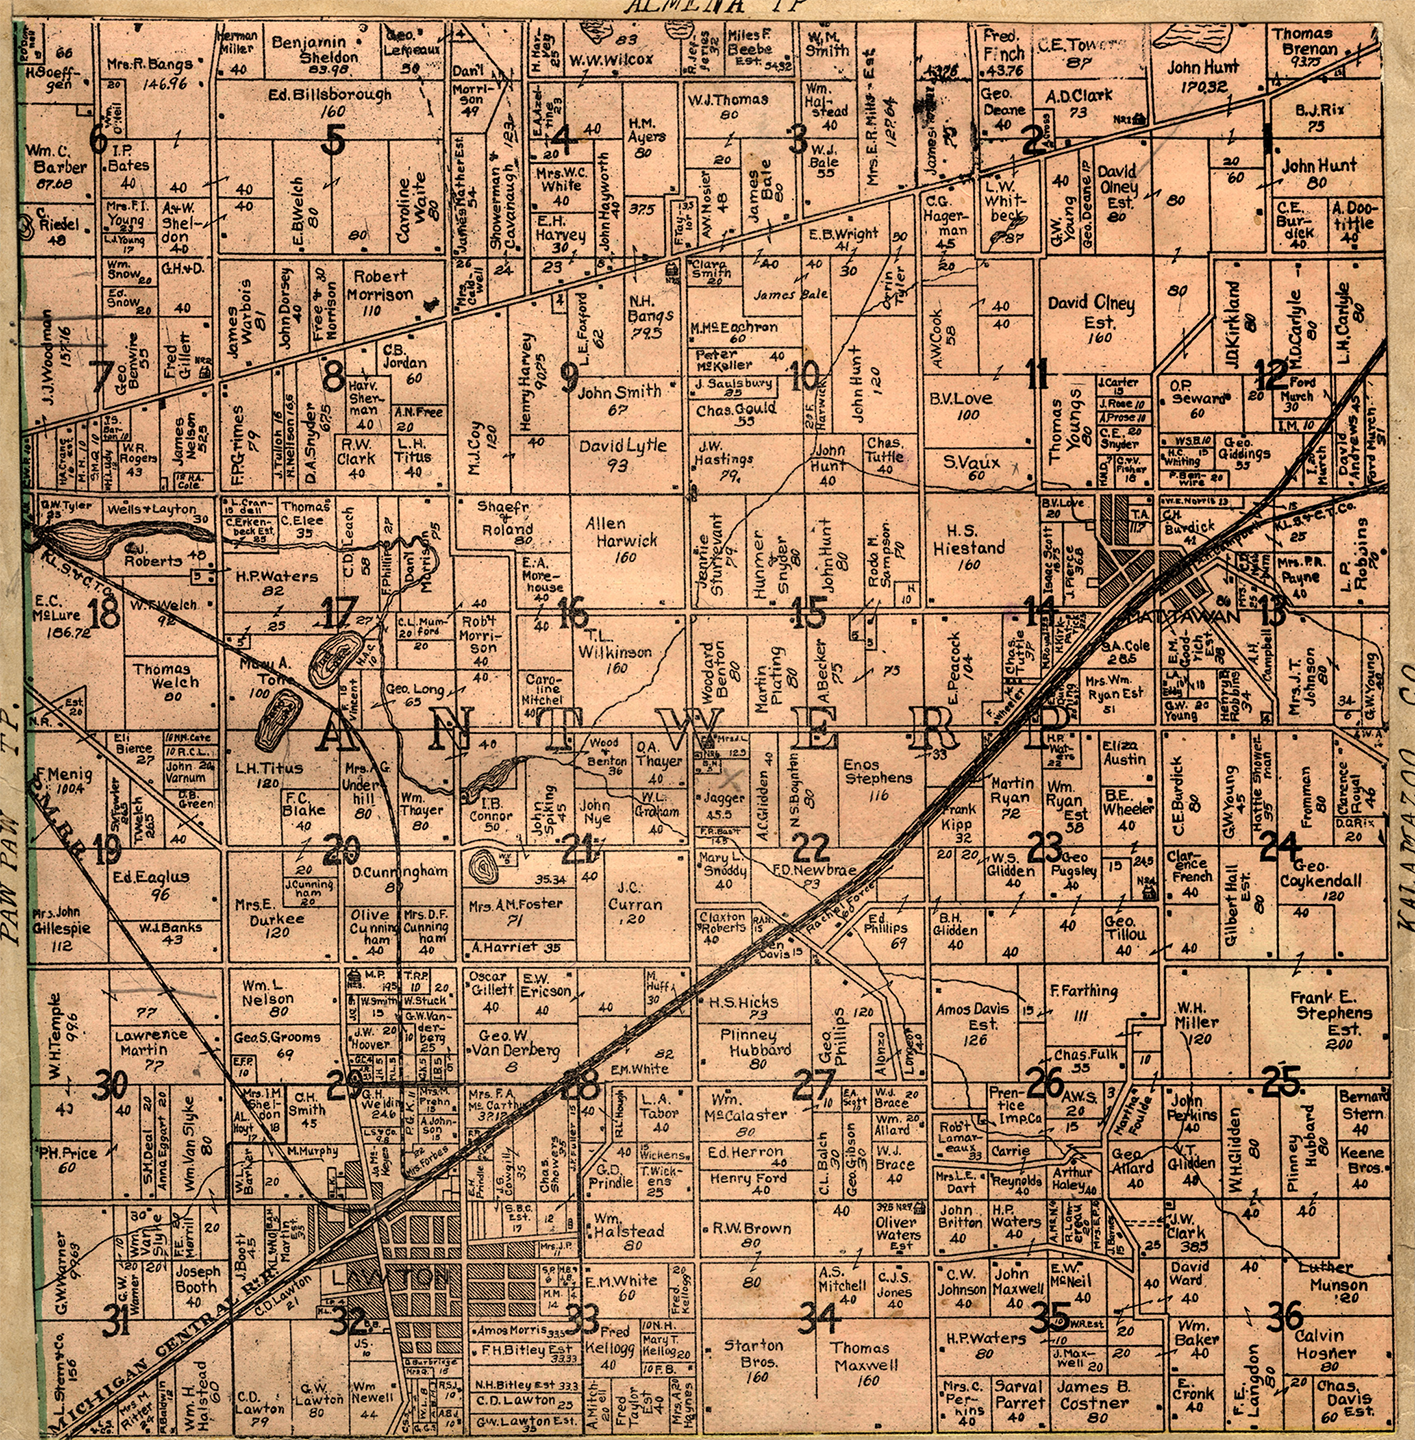 1906 Antwerp Township, Michigan landownership map